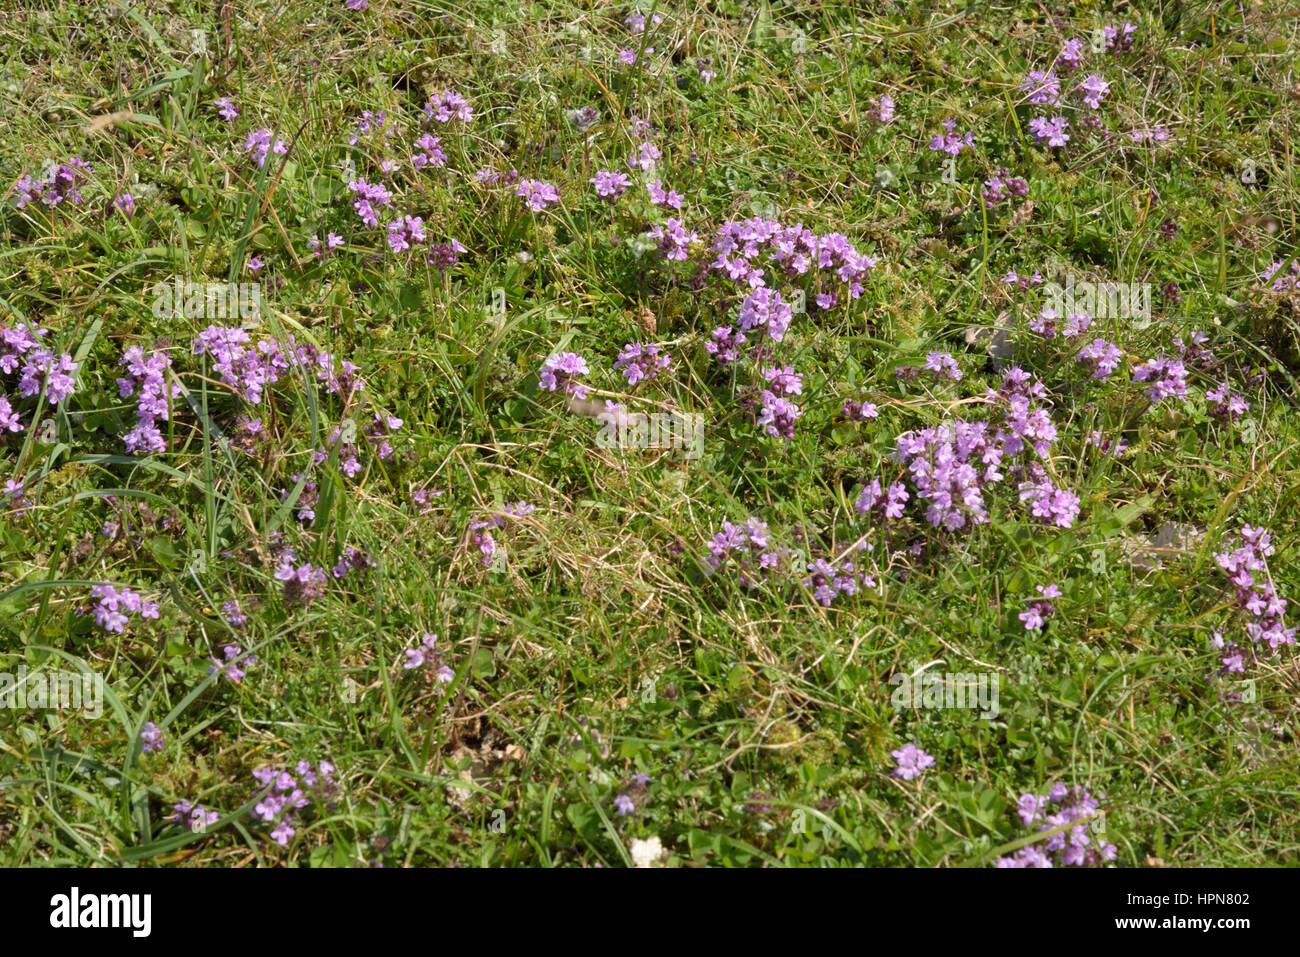 Wild Thyme, Thymus polytrichus in Grass Stock Photo